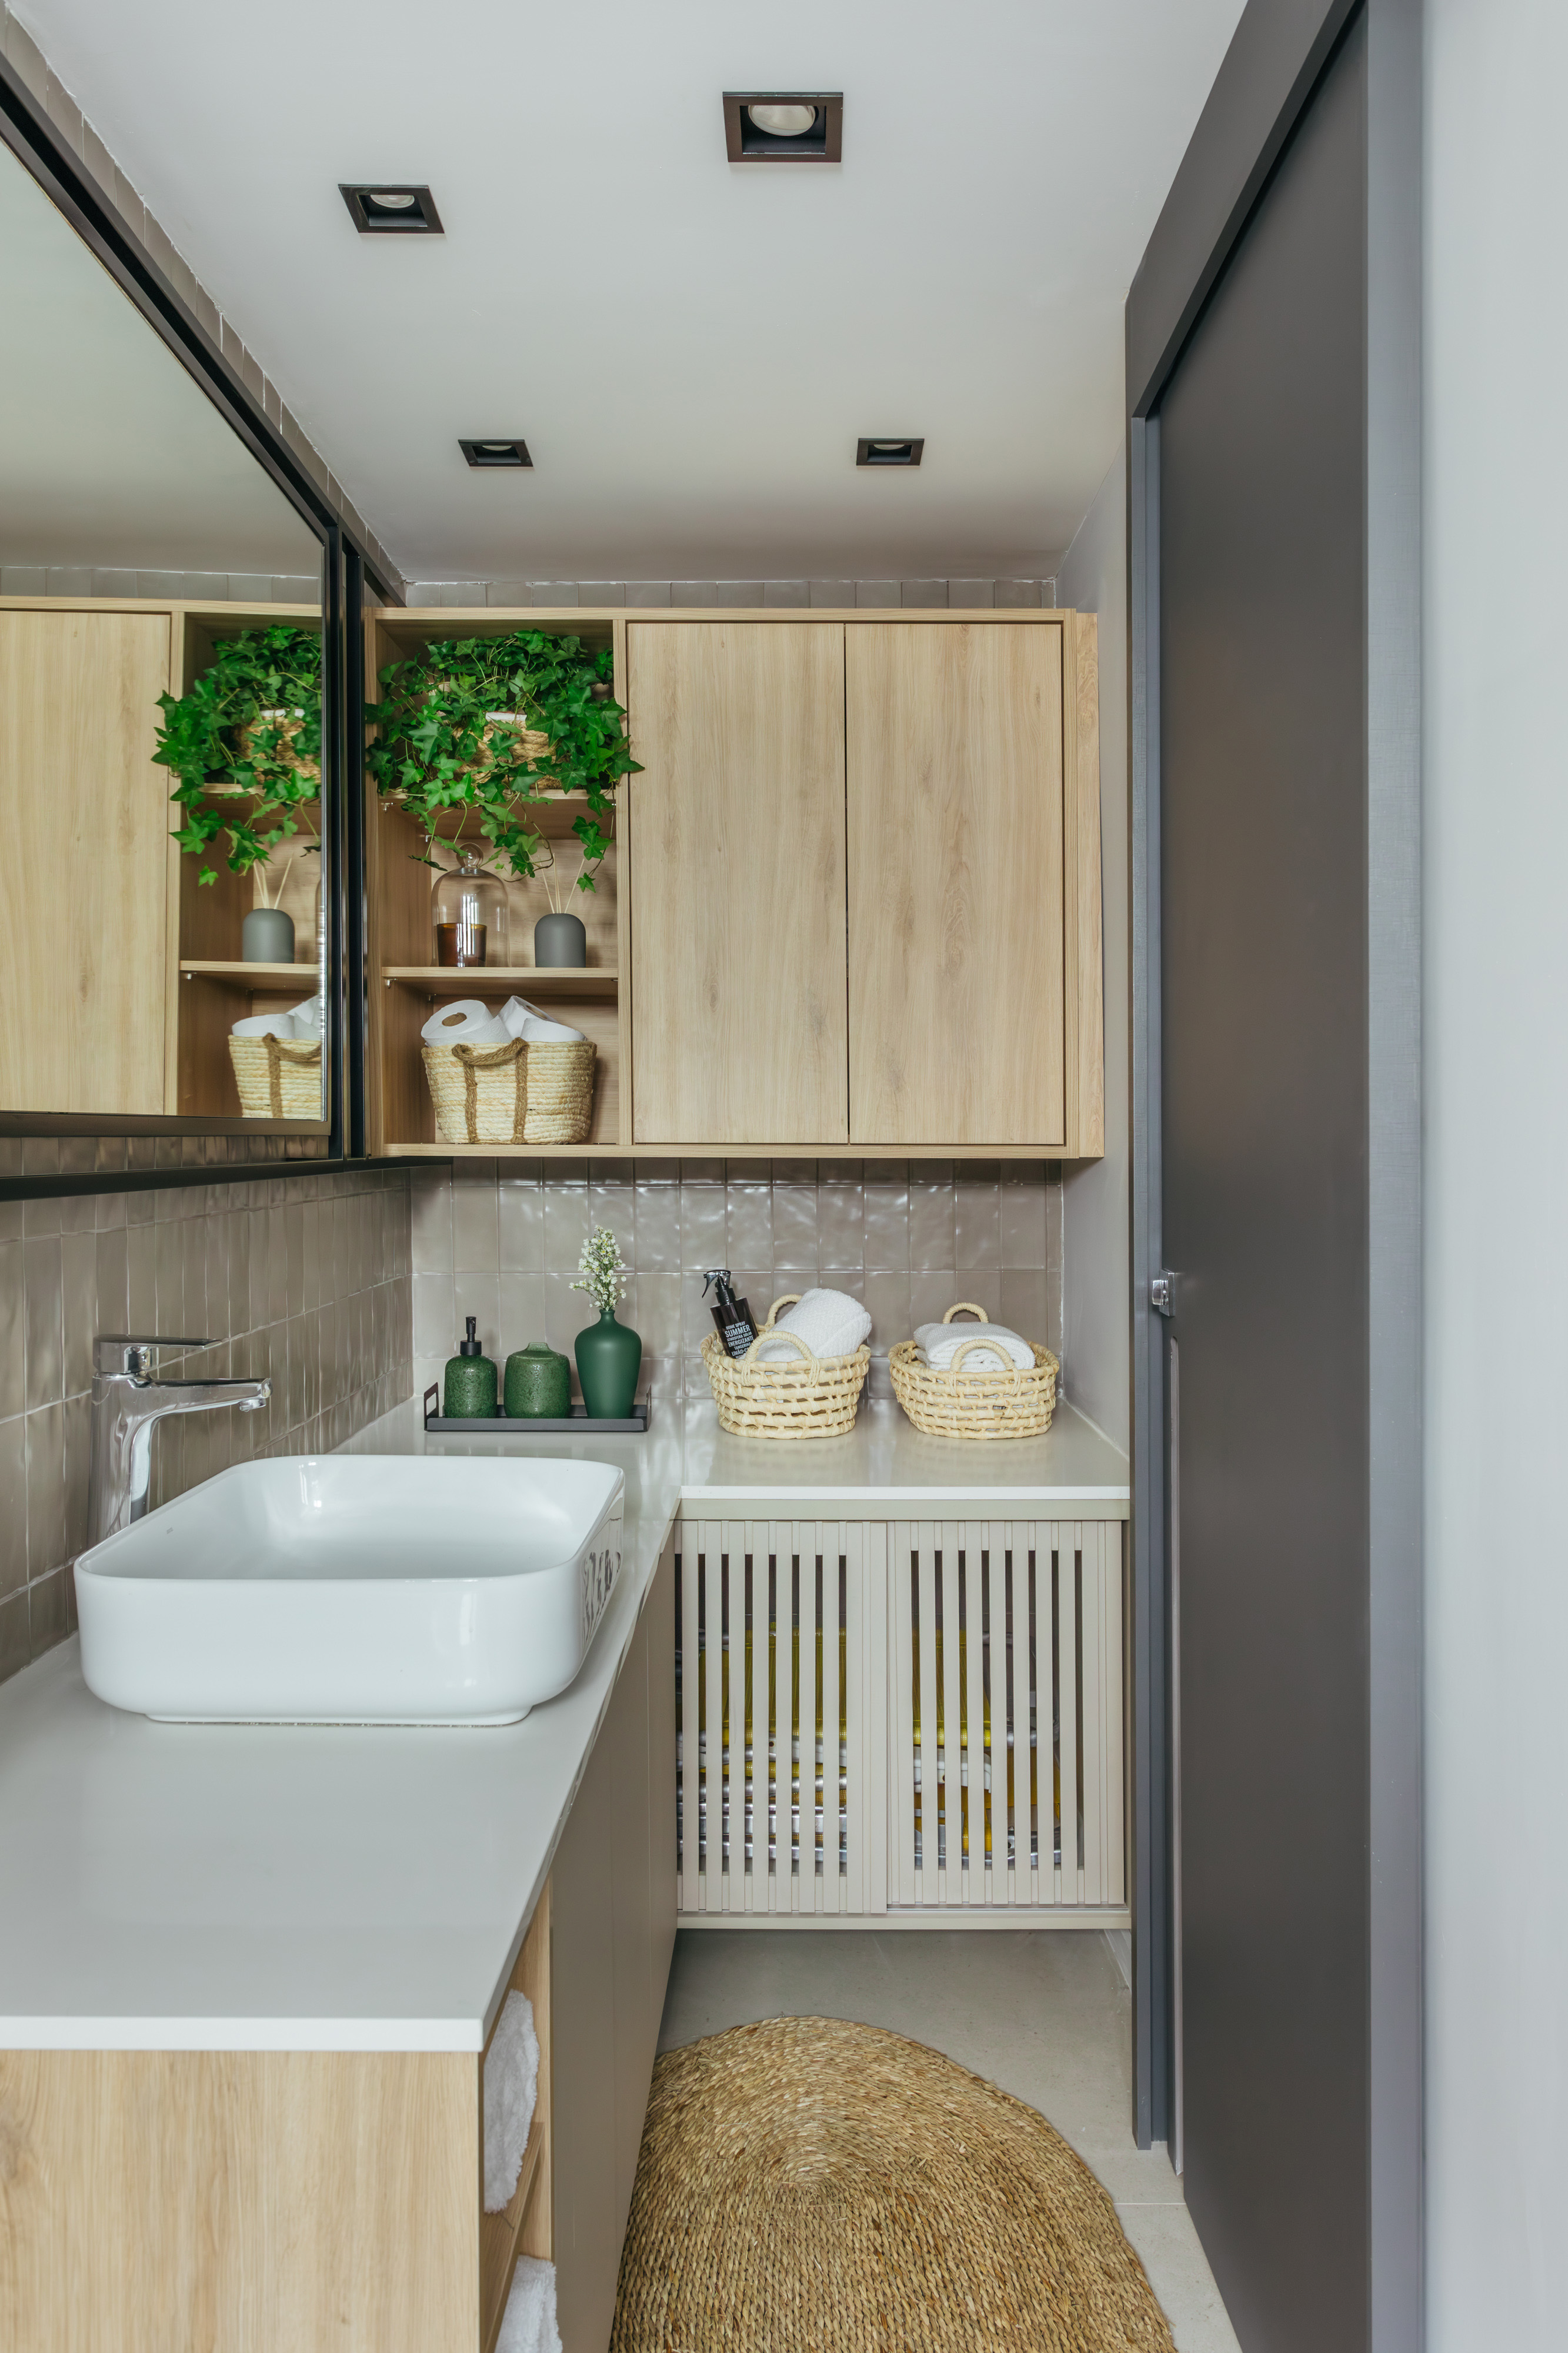 Projeto de Ikeda Arquitetura. Na foto, banheiro pequeno com cuba solta e armário suspenso.